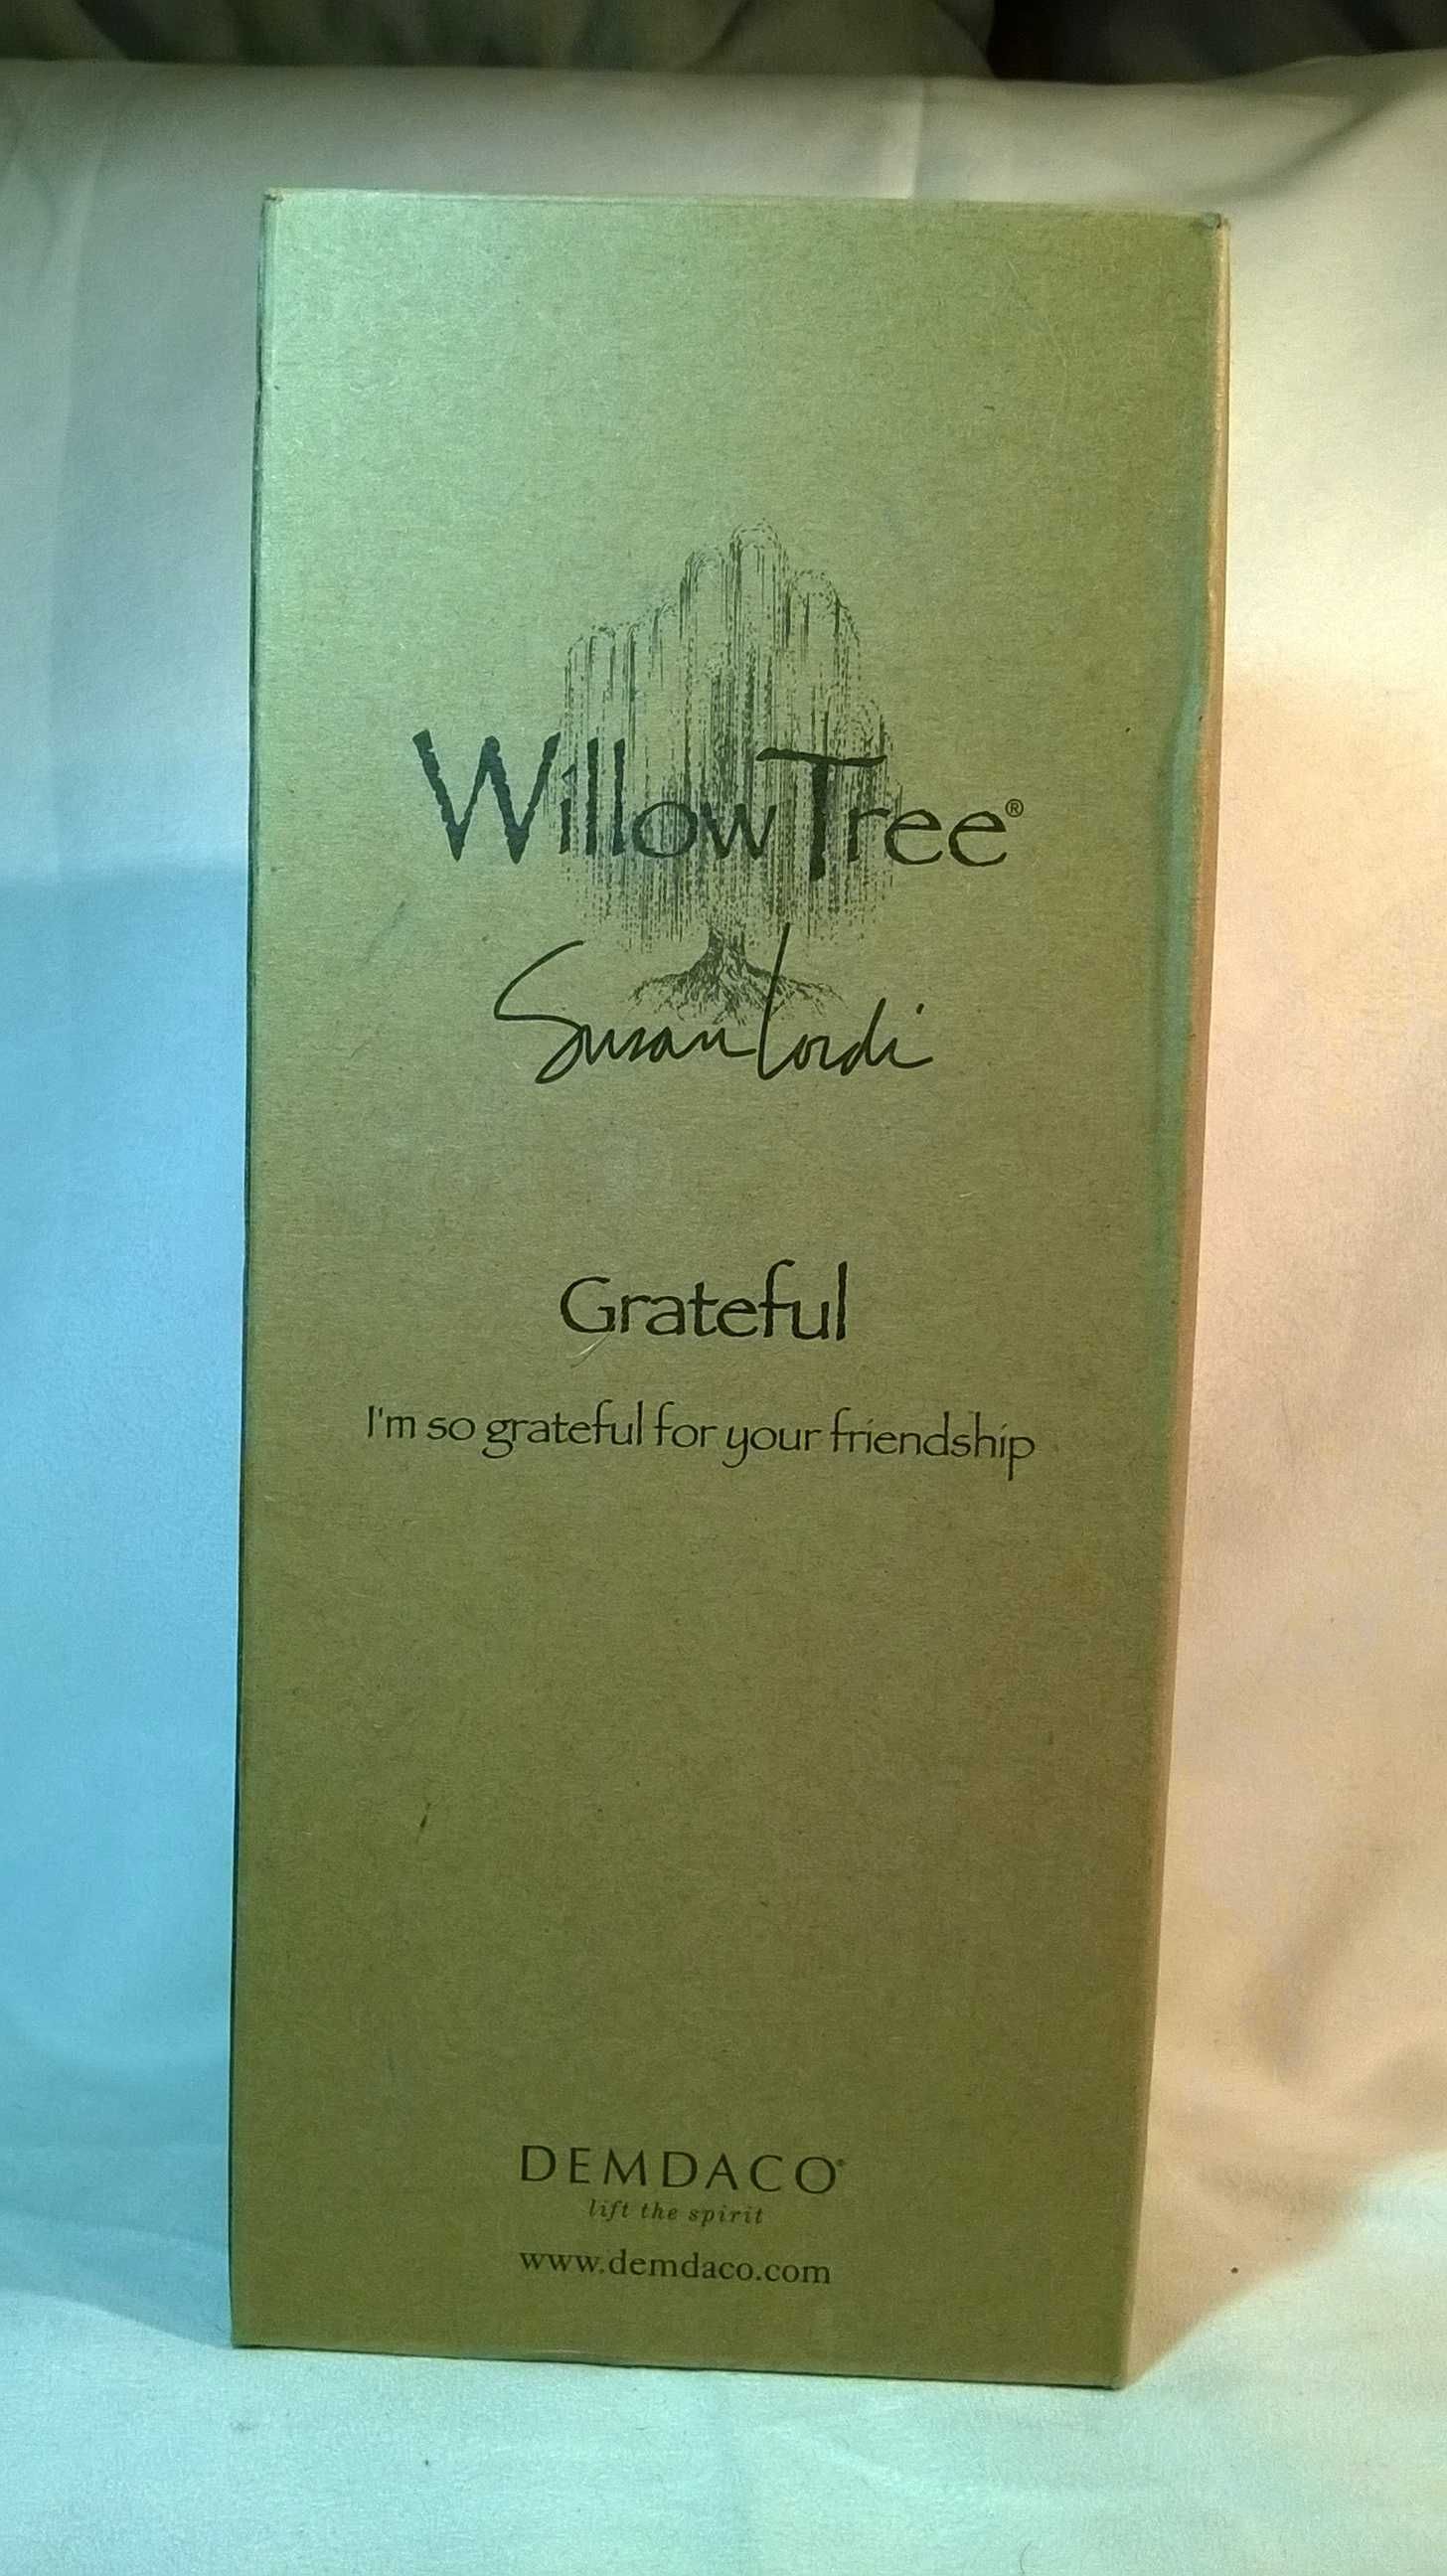 Willow Tree figurka  GRATEFUL
Wdzięczny